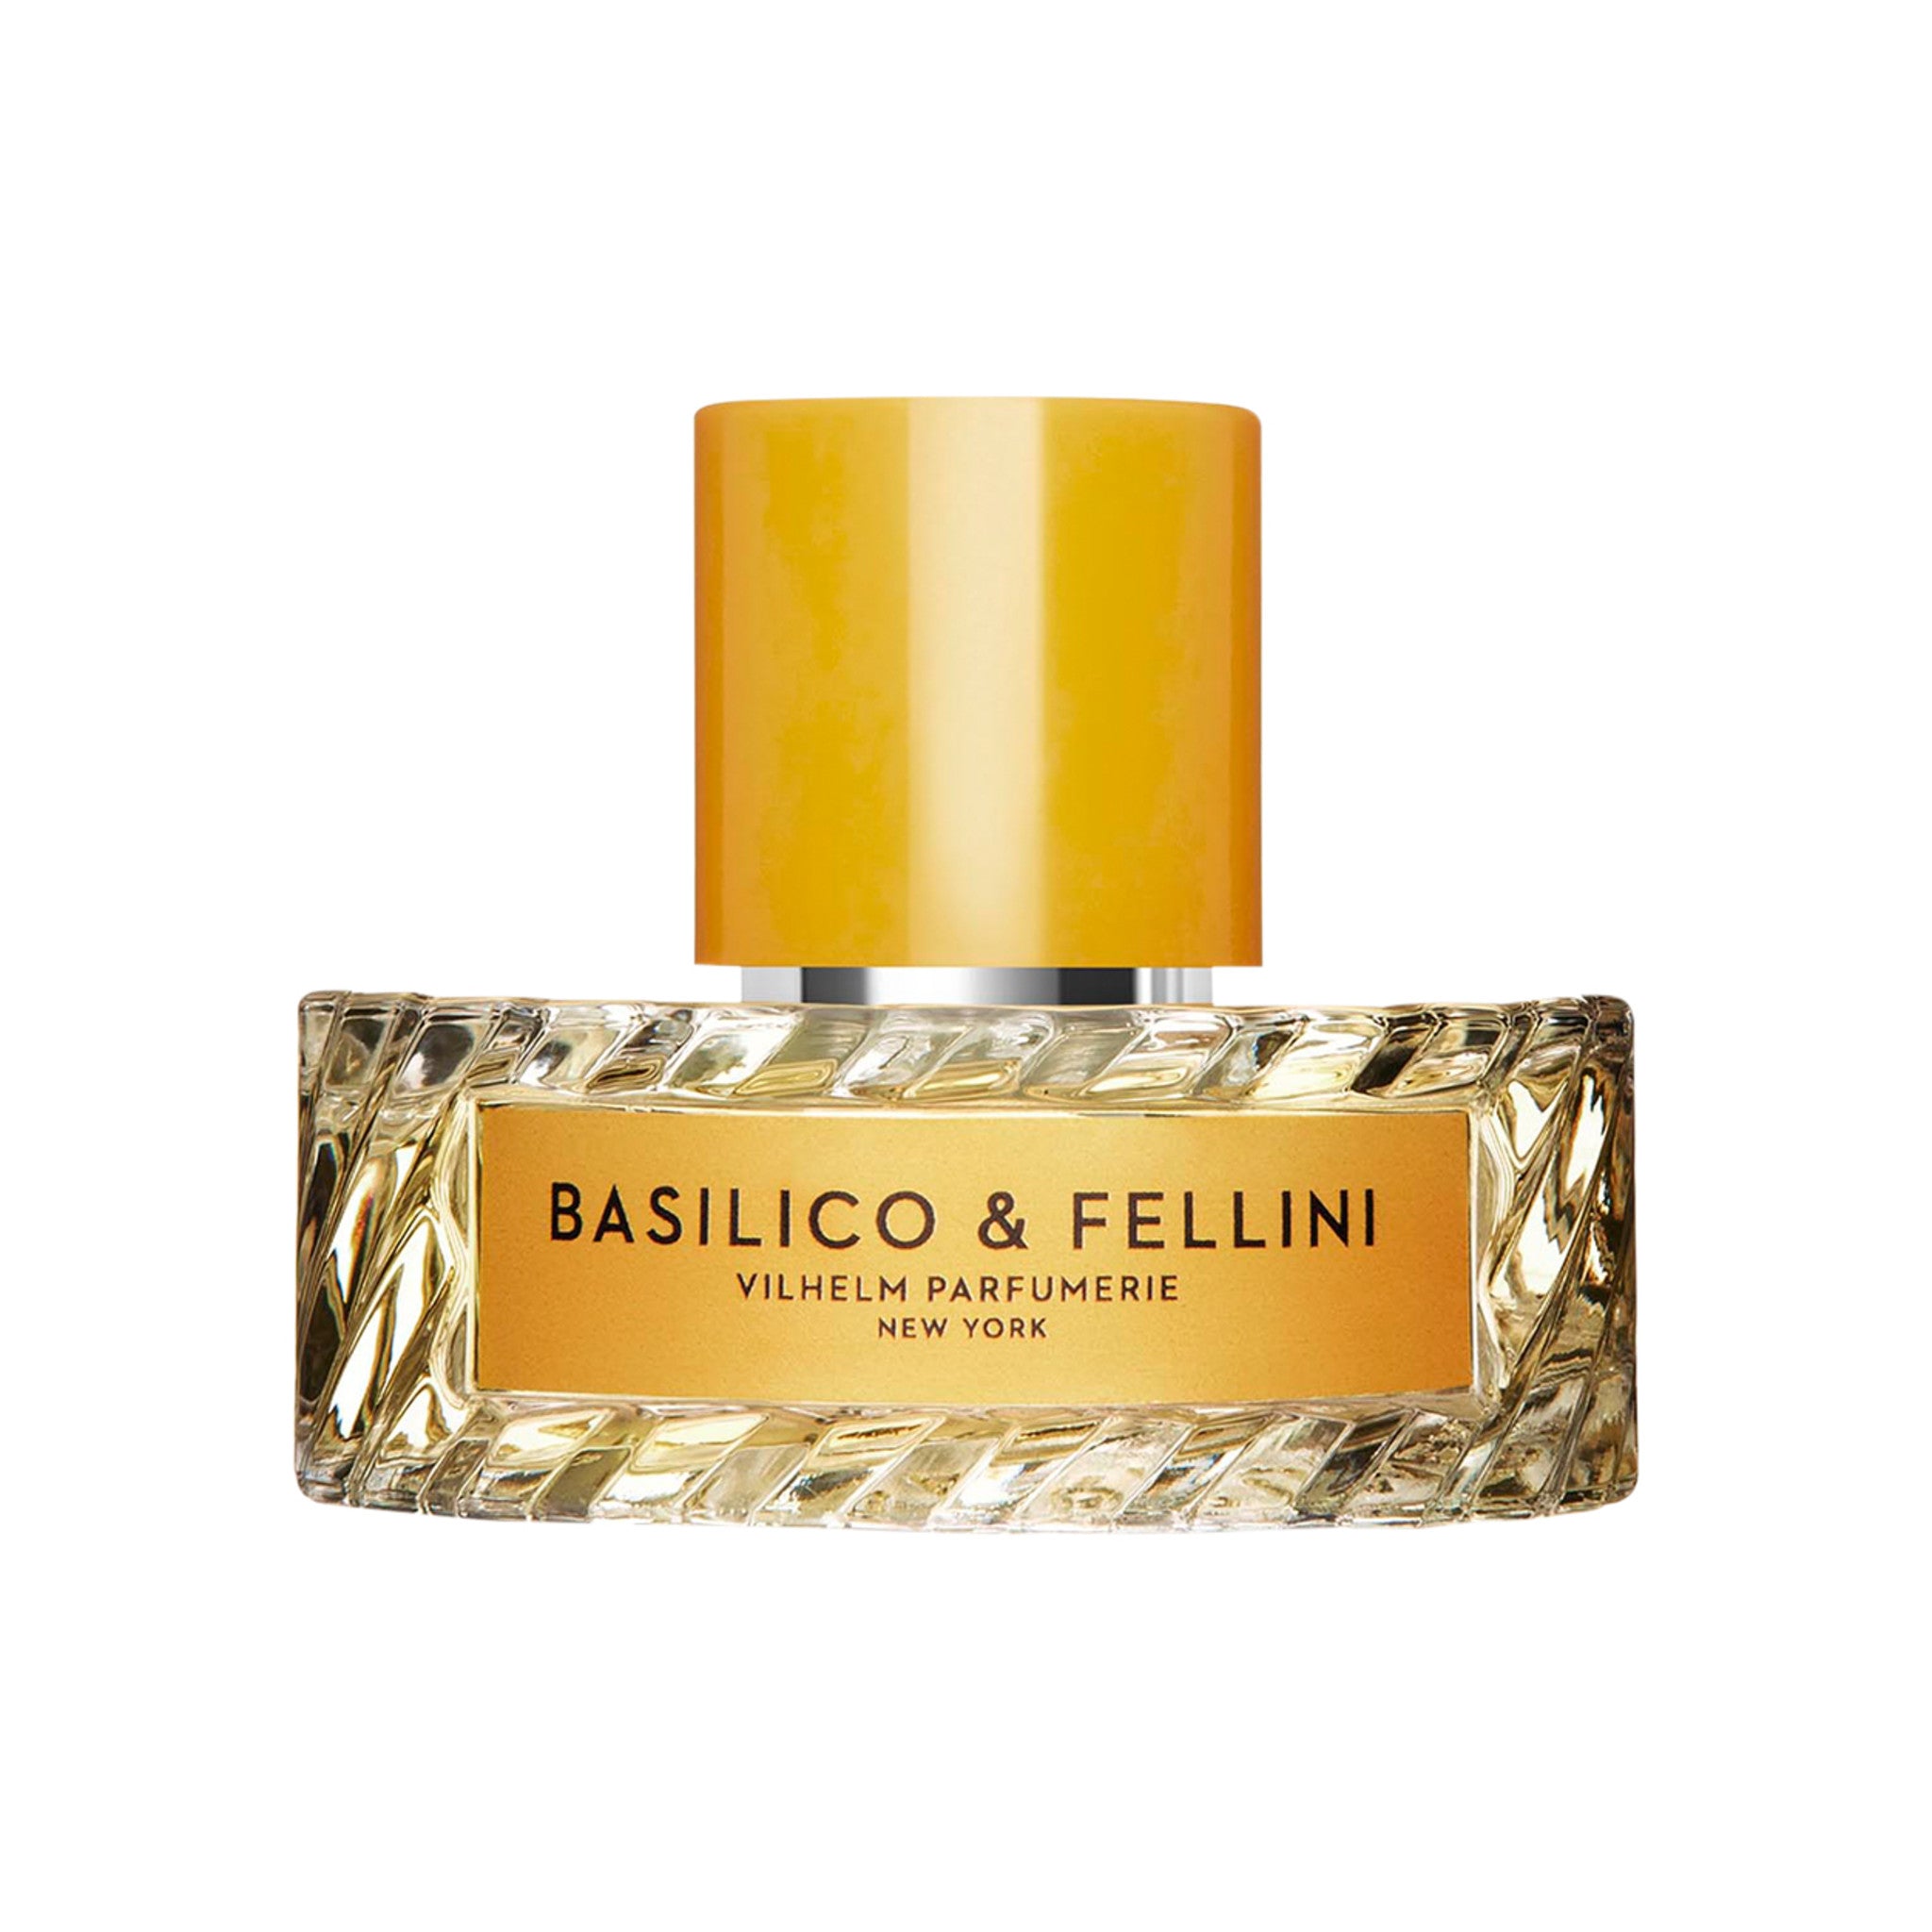 Vilhelm Parfumerie Basilico and Fellini Eau de Parfum Size variant: 50 ml main image.